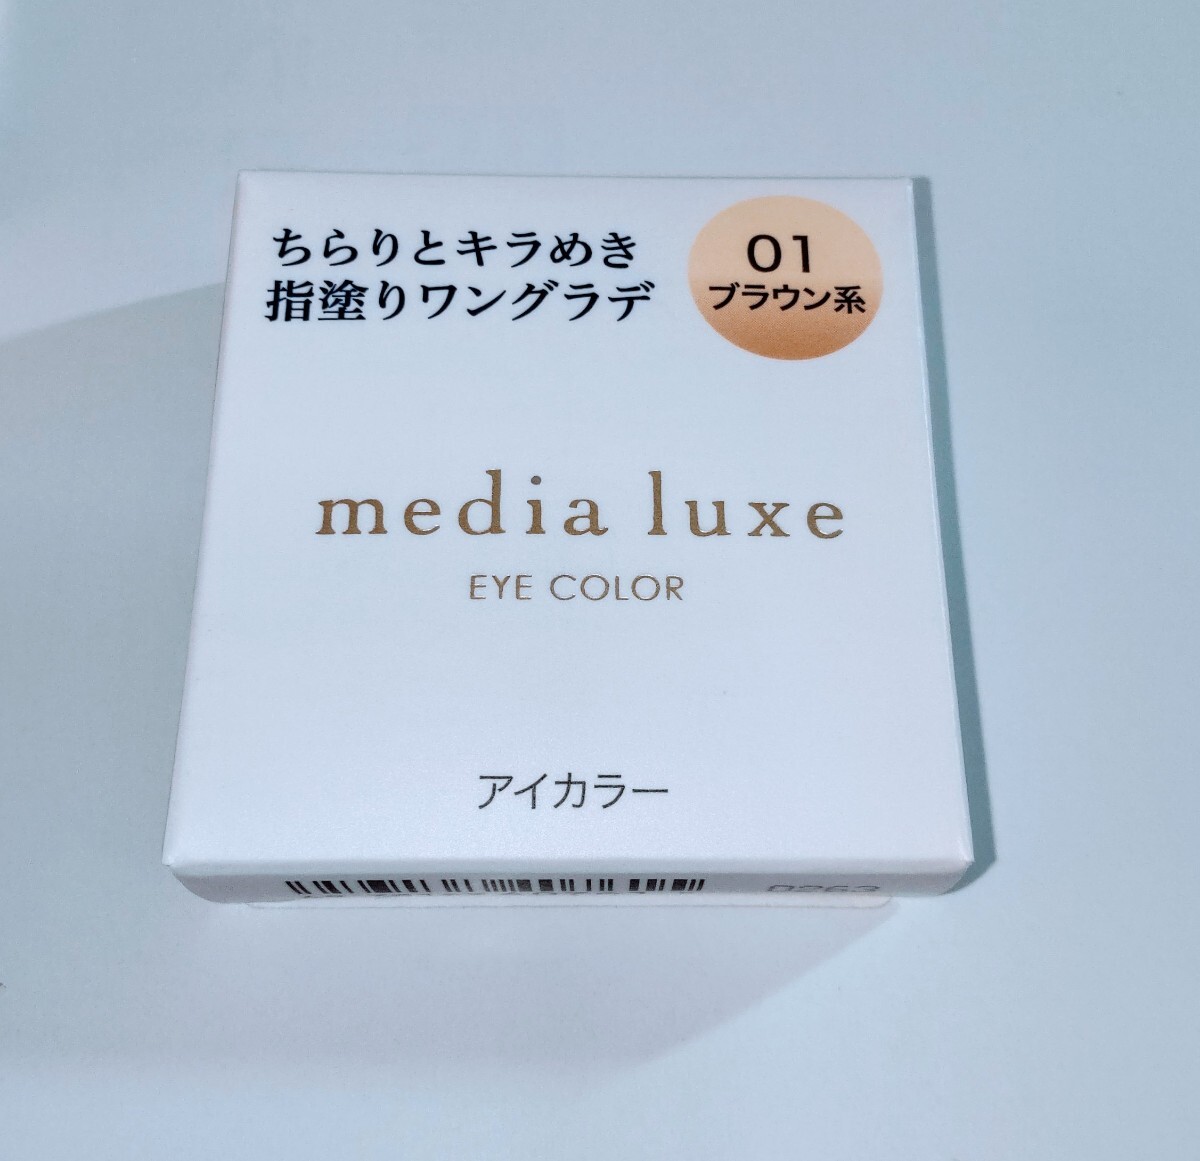 【新品未開封】メディアリュクス アイカラー（01ブラウン系）【media luxe】定価935円【カネボウ】_画像1